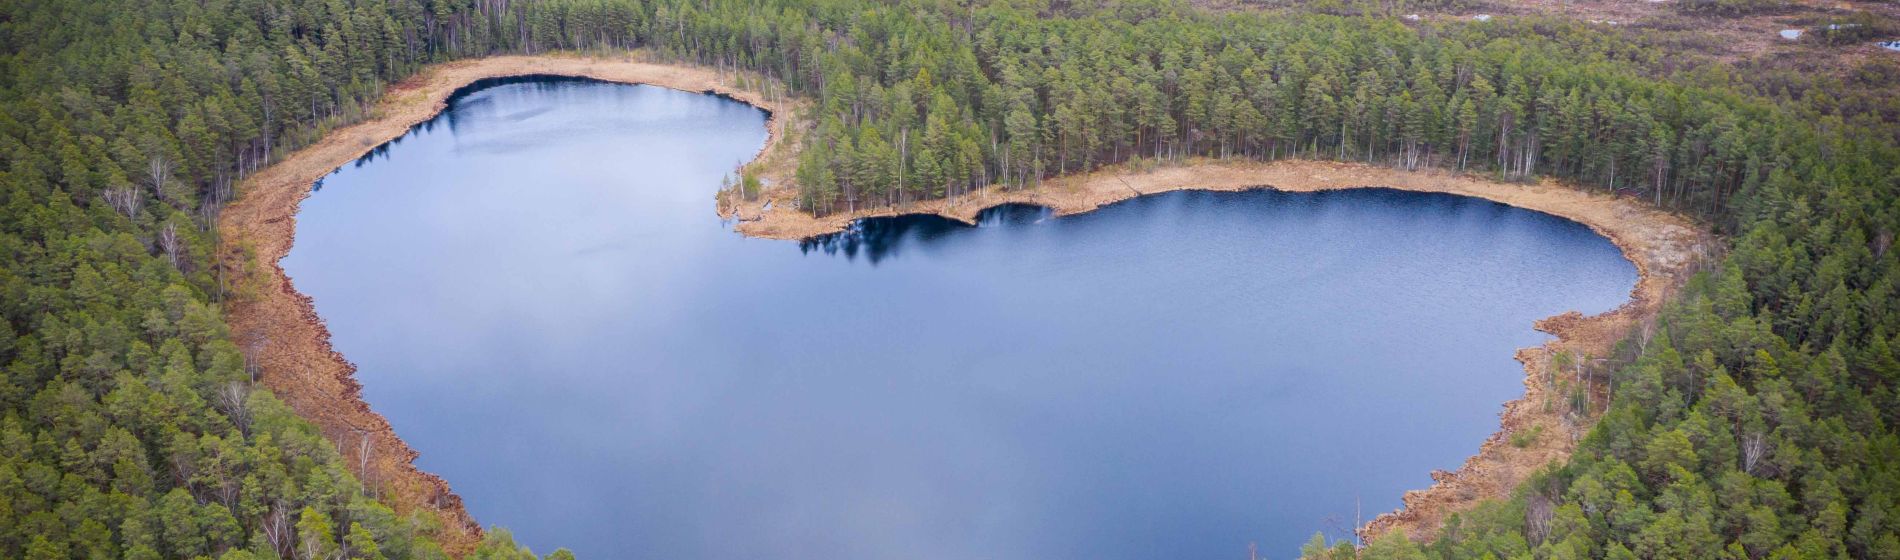 aerial_view_to_the_natural_heart-shaped_forest_lake_on_parika_nature_reserve_viljandi_estonia.jpg